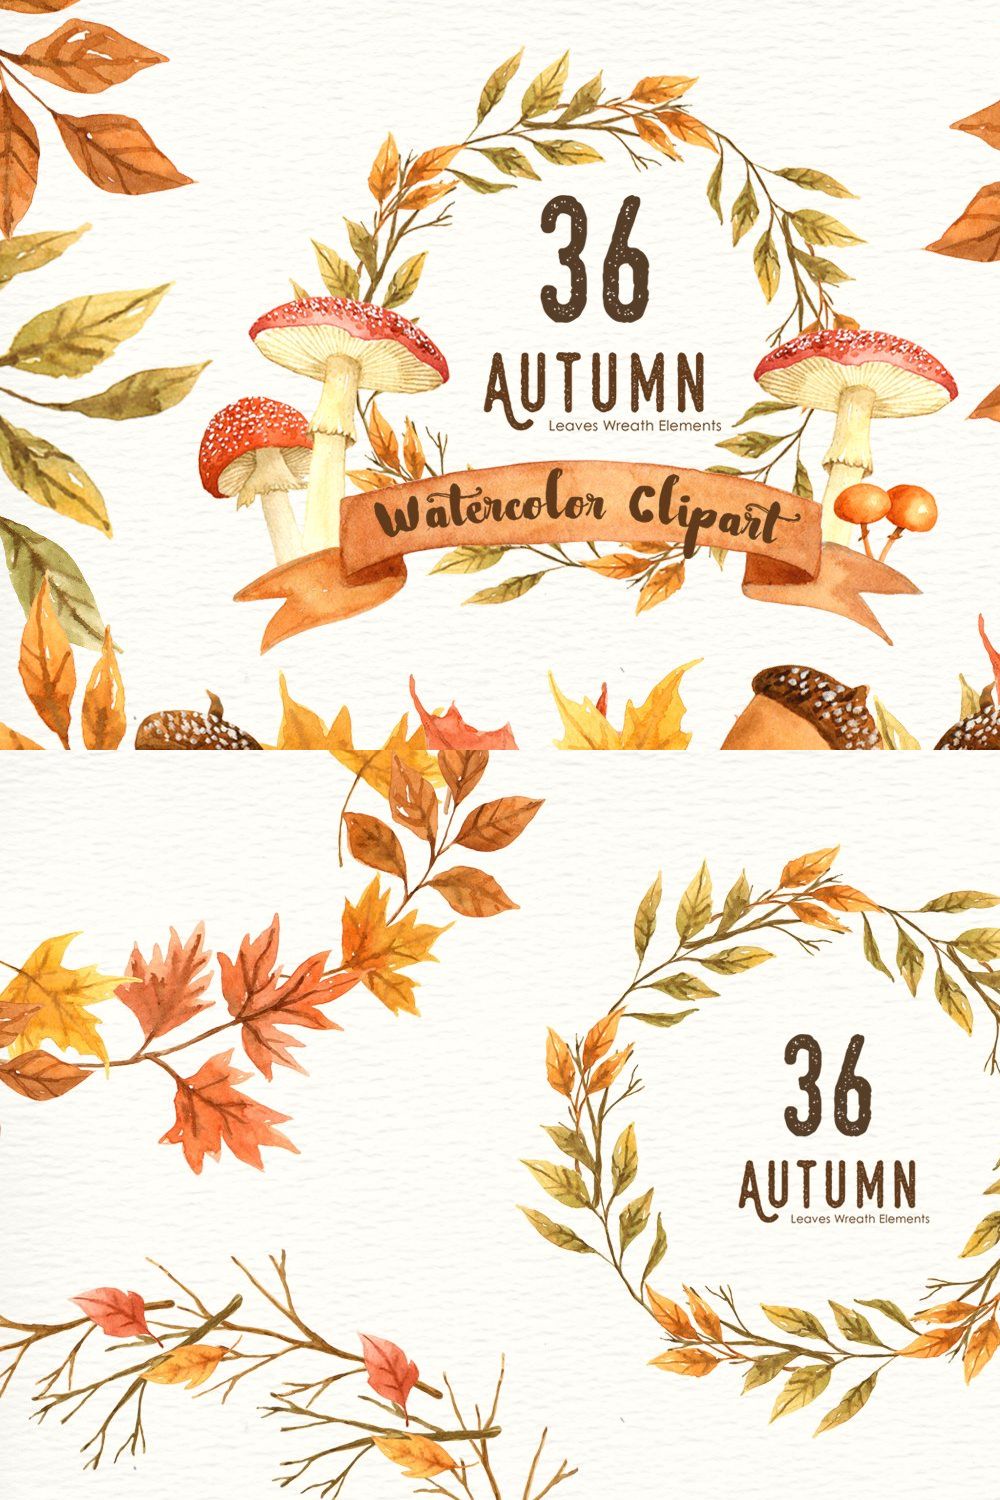 Autumn Leaf Watercolor Clipart pinterest preview image.